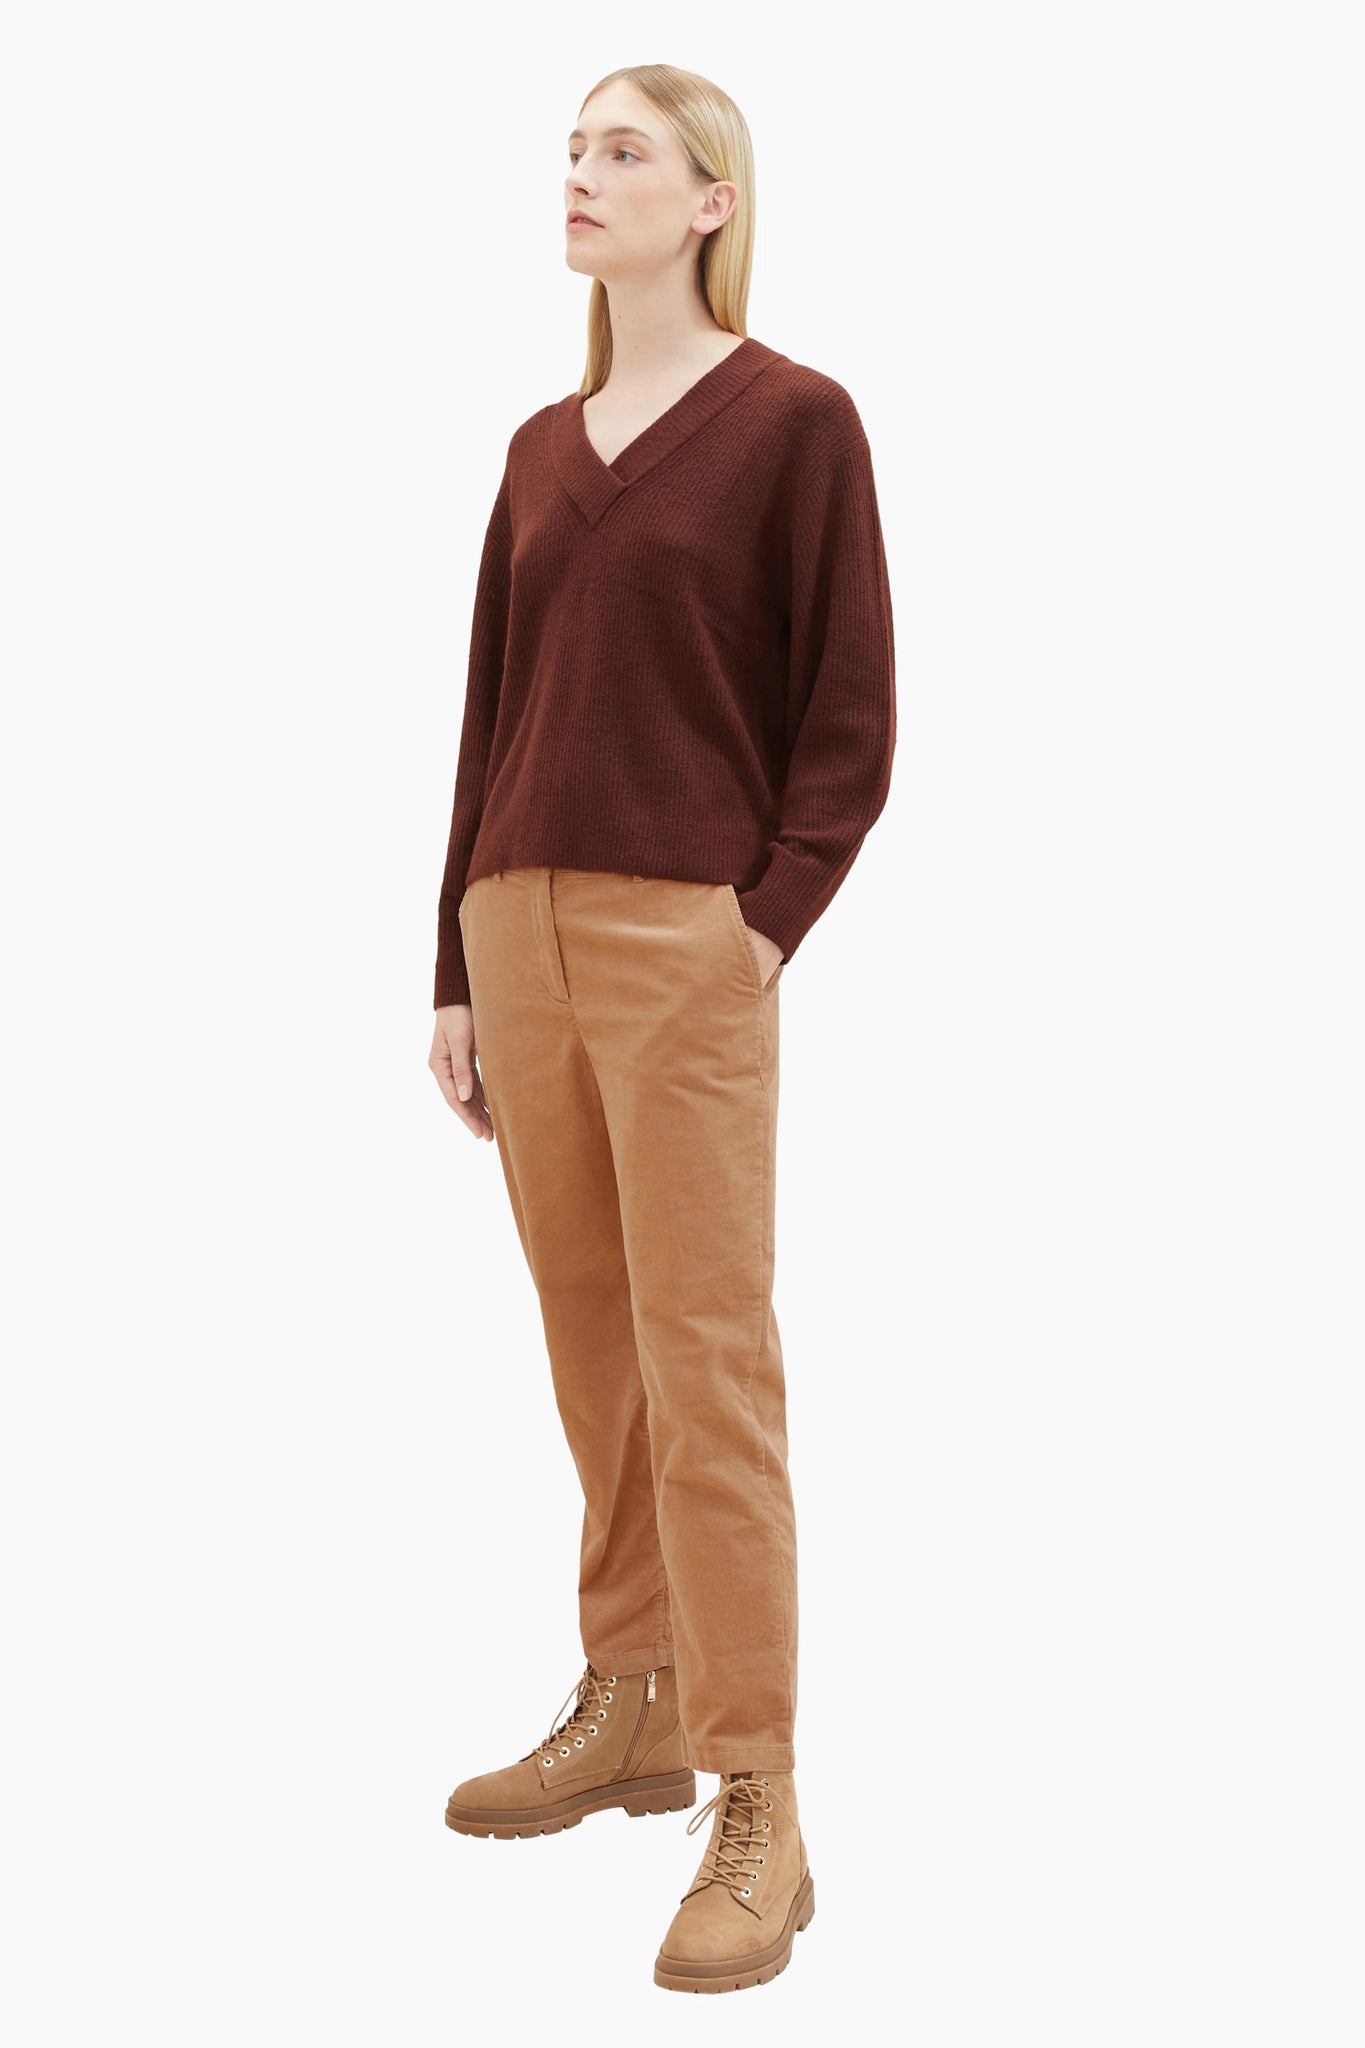 Tom tailor 1037771 marron v-neck sweater